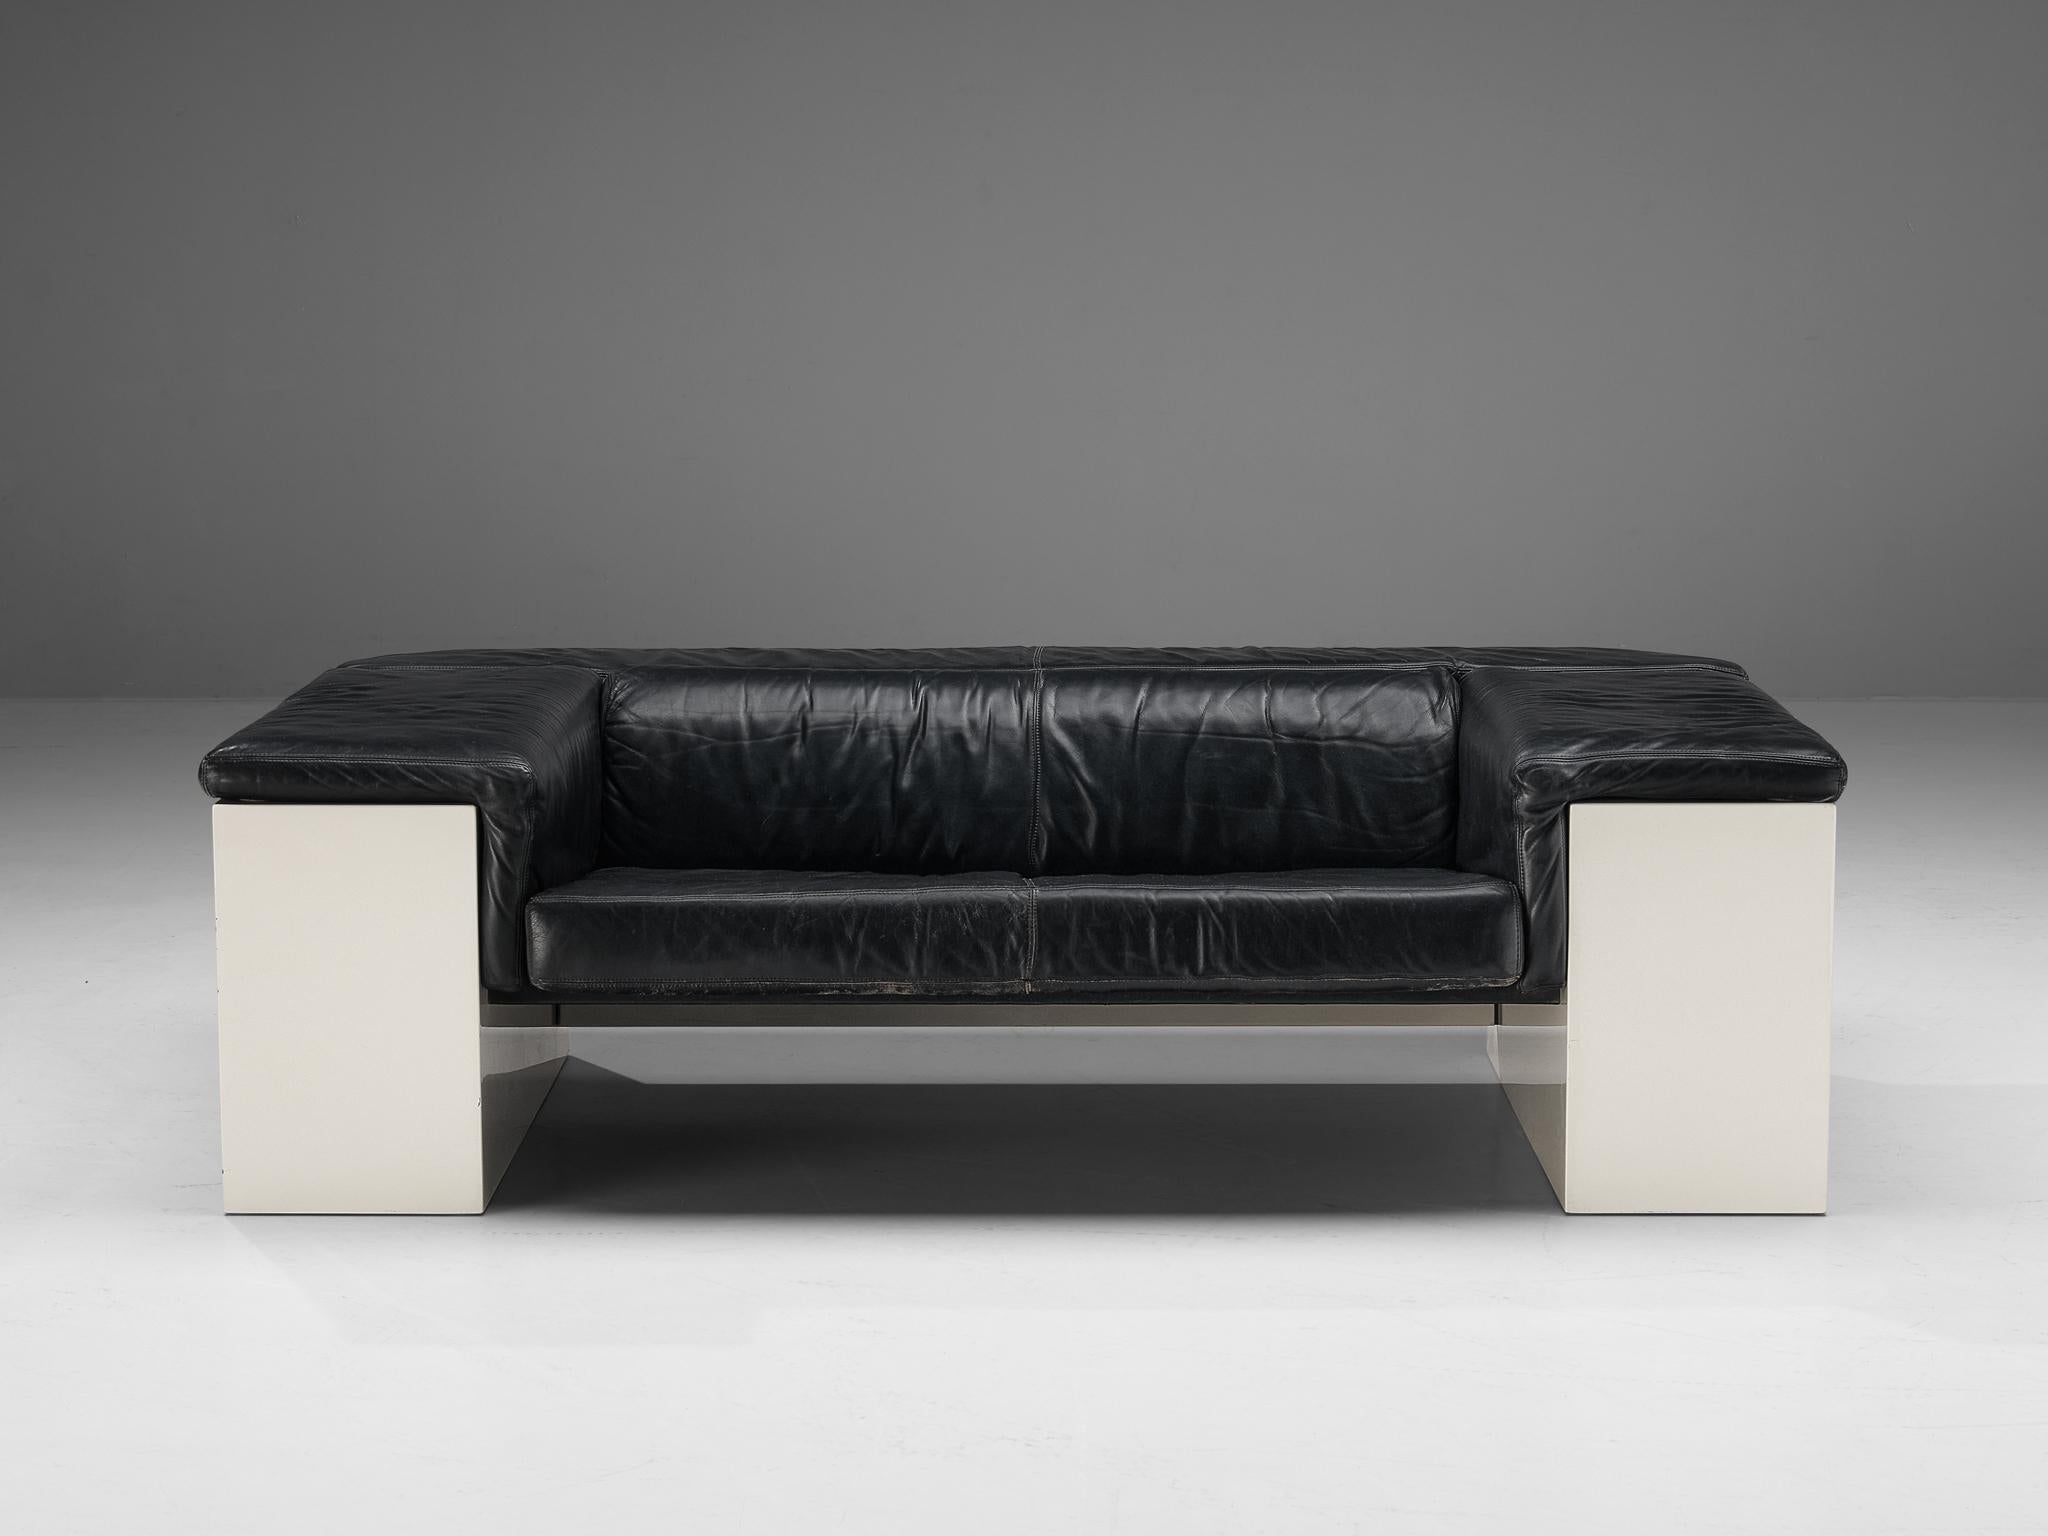 Cini Boeri for Knoll 'Brigadiere' Sofa in Black Leather